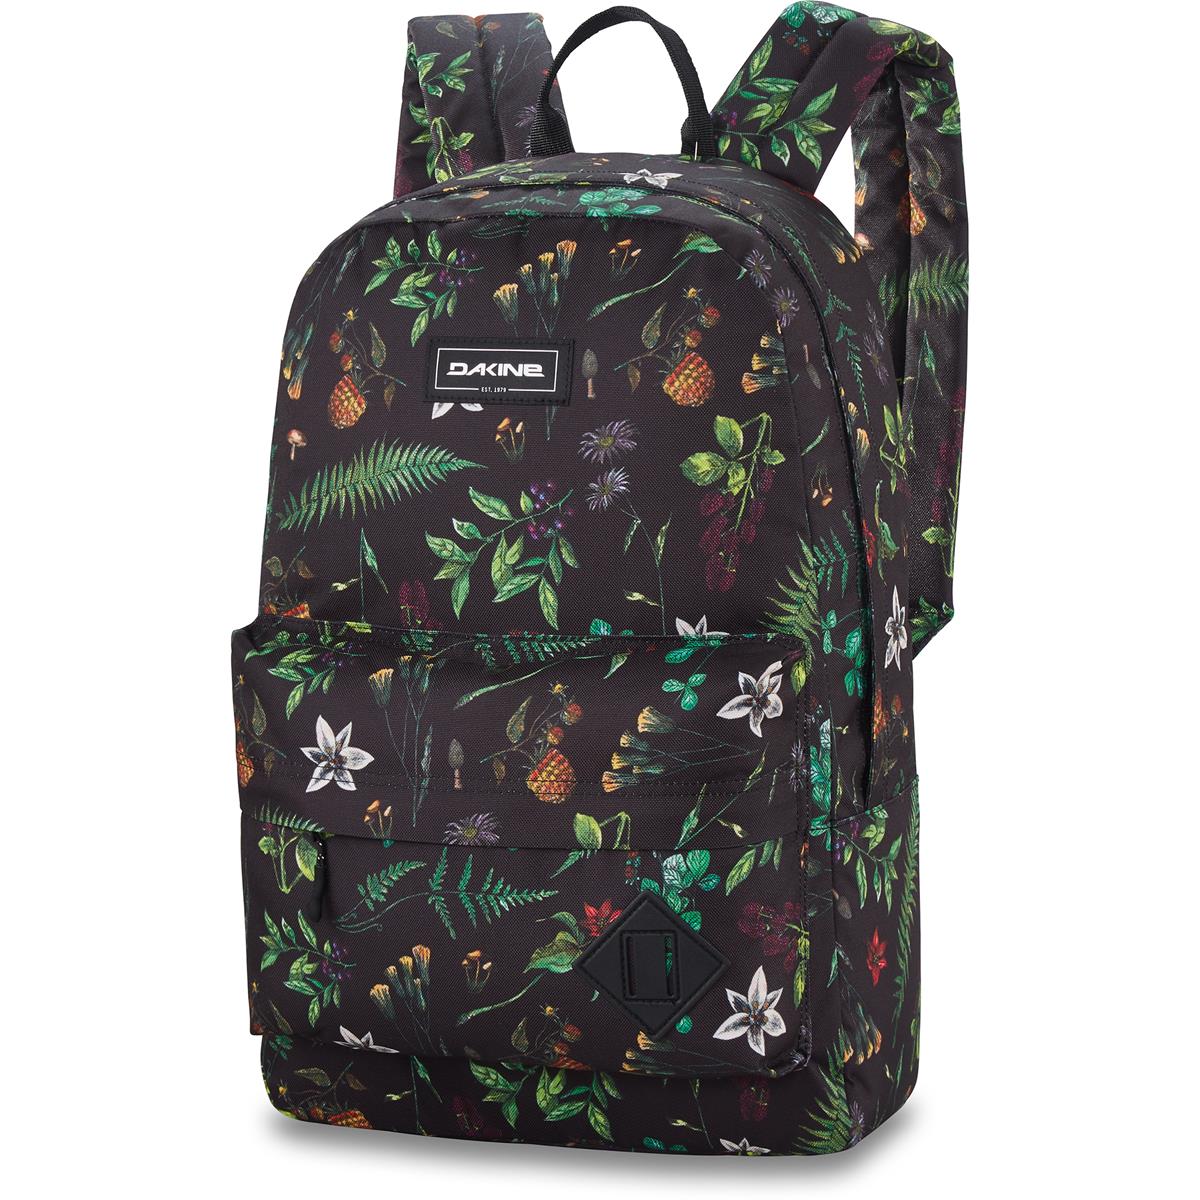 Dakine Backpack 365 Pack Woodland Floral